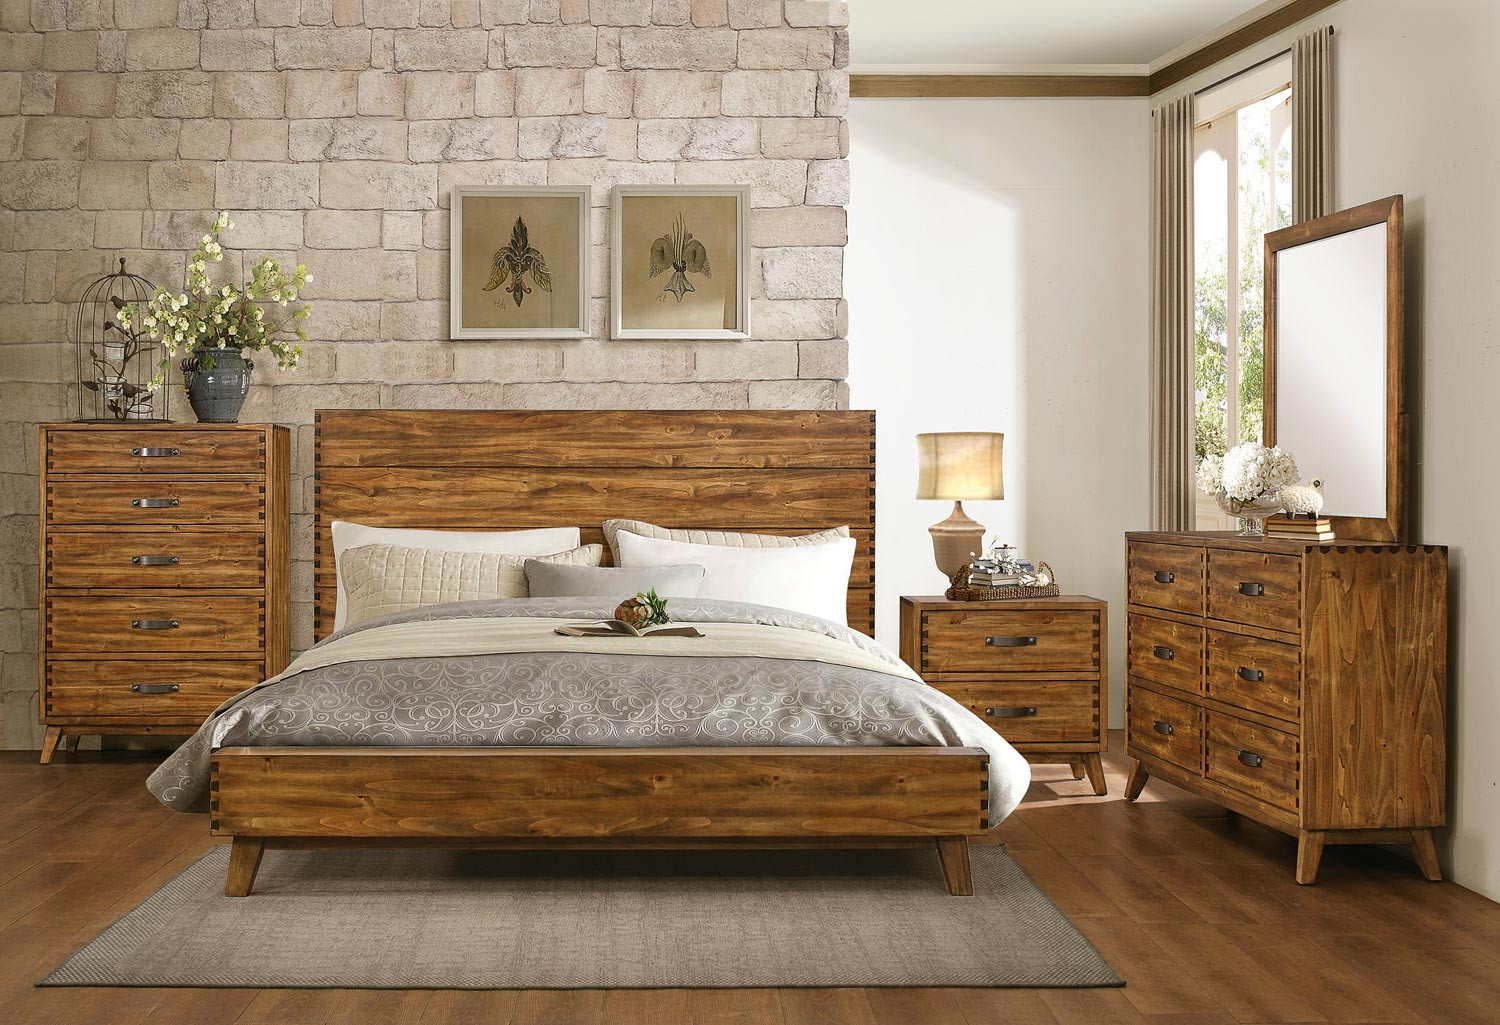 Cheap Rustic Bedroom Furniture Sets
 Homelegance Sorrel Panel Platform Bedroom Set Rustic